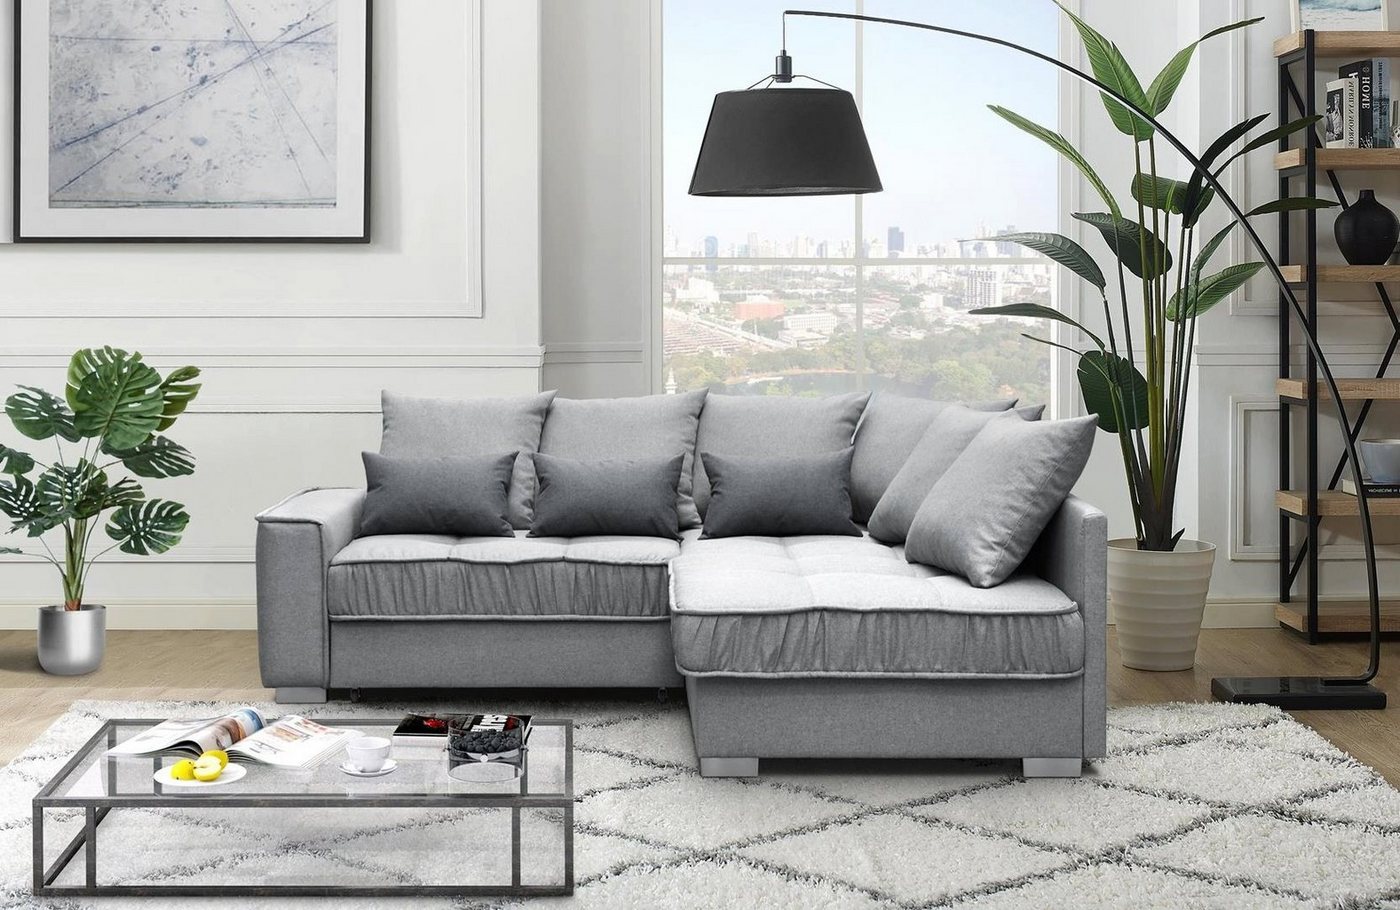 Beautysofa Polsterecke Modern Eckcouch Couch Ralf mit Bettkasten und Schlaffunktion Sofa von Beautysofa